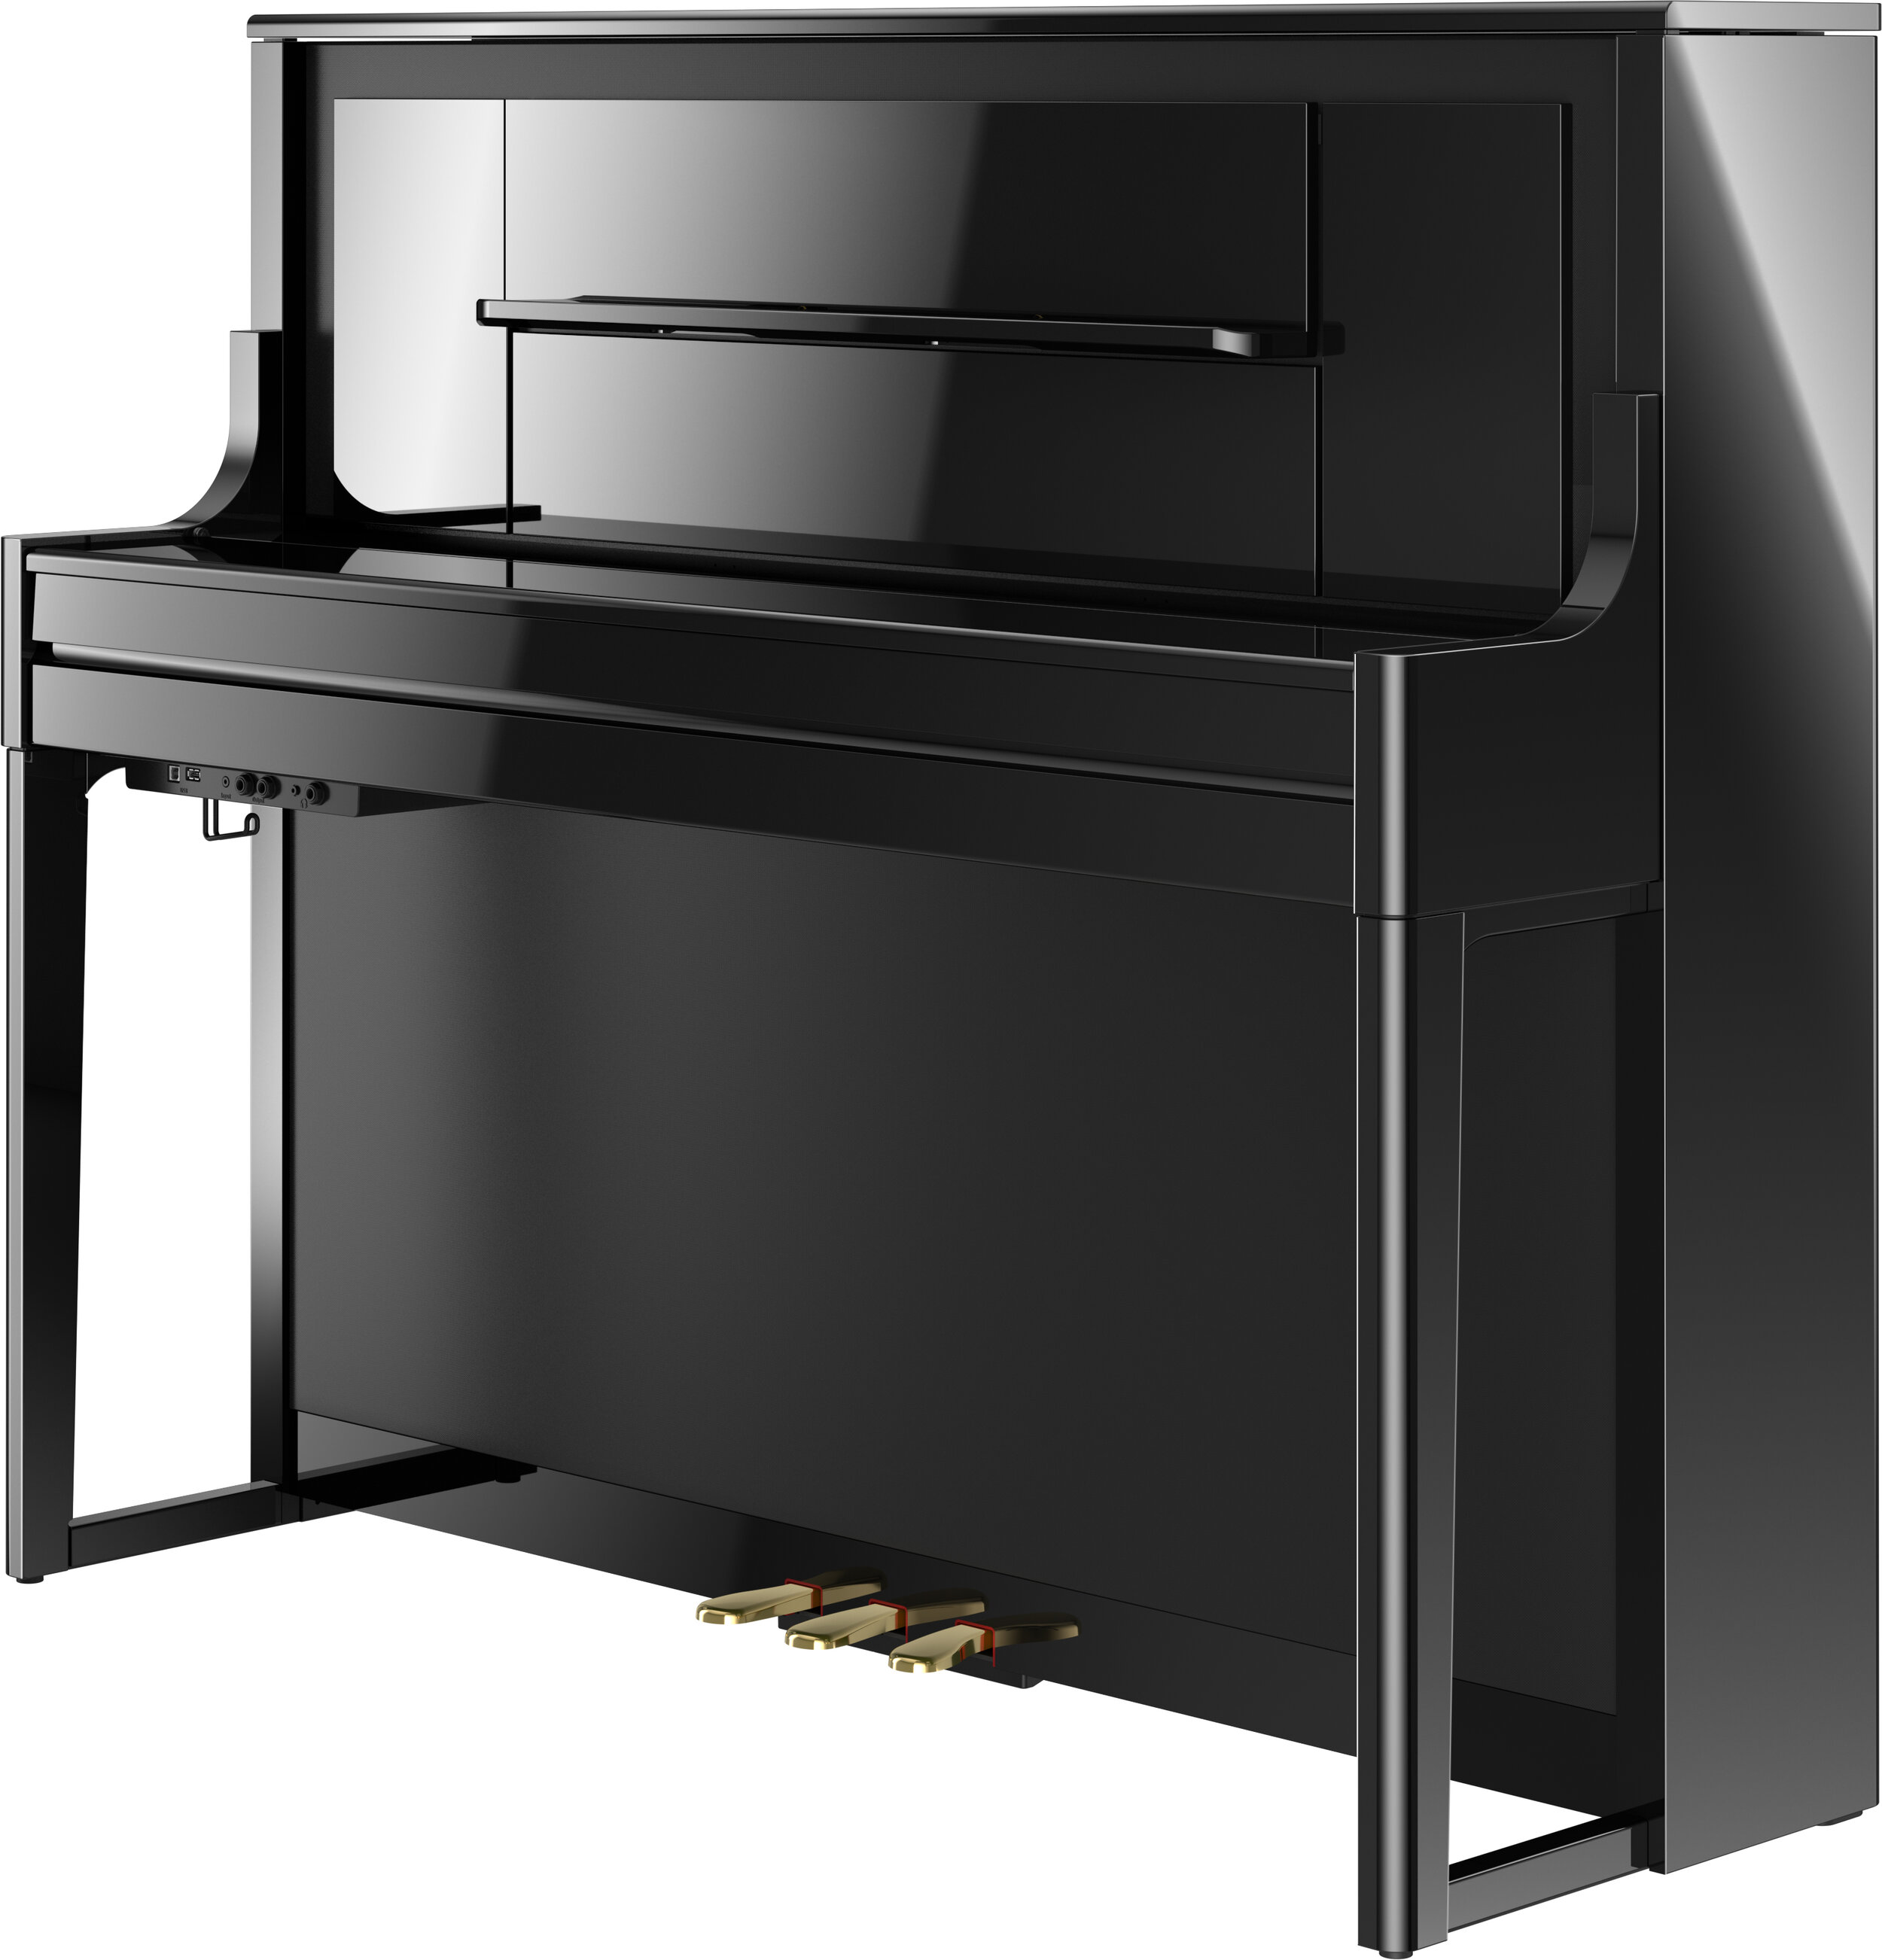 Roland Digital Piano LX-708 — Fort Pitt Piano Company